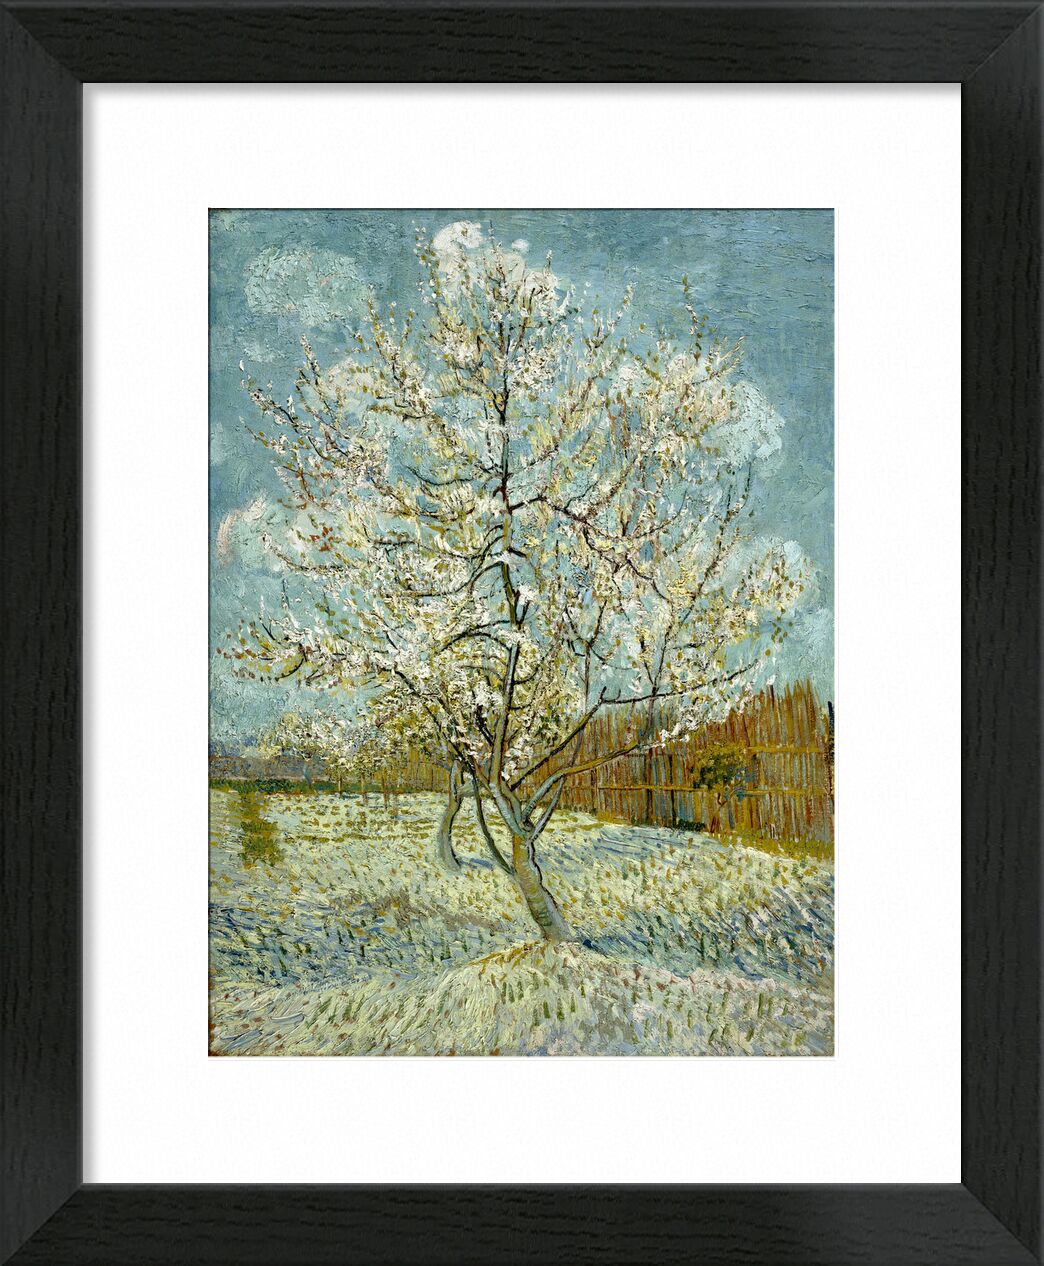 Der rosa Pfirsichbaum - Van Gogh von Bildende Kunst, Prodi Art, Natur, Baum, Malerei, Van gogh